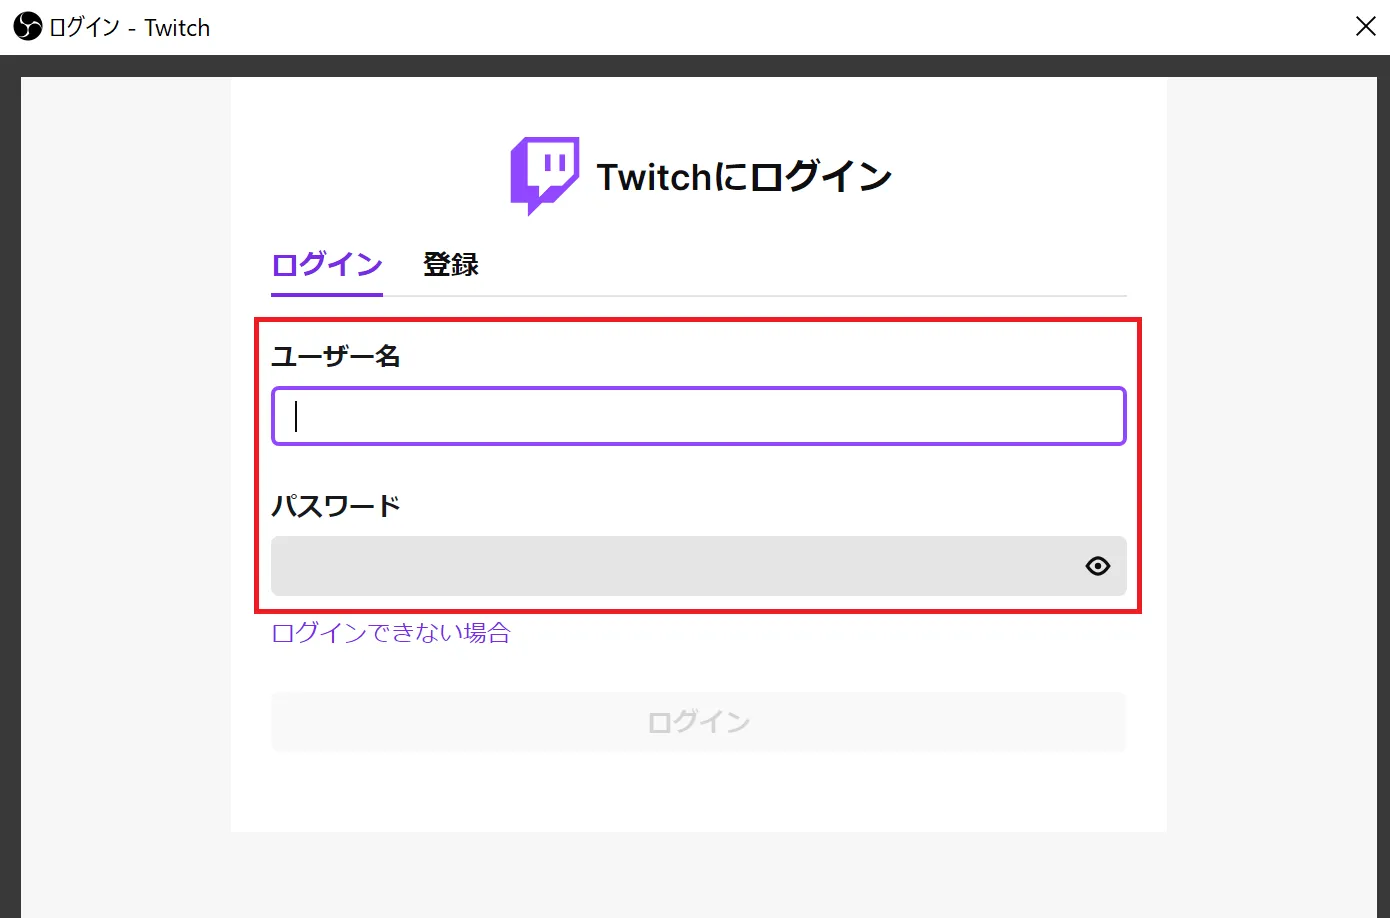 Twitchのログイン画面が表示されますので、Twitchのユーザー名とパスワードを入力します。